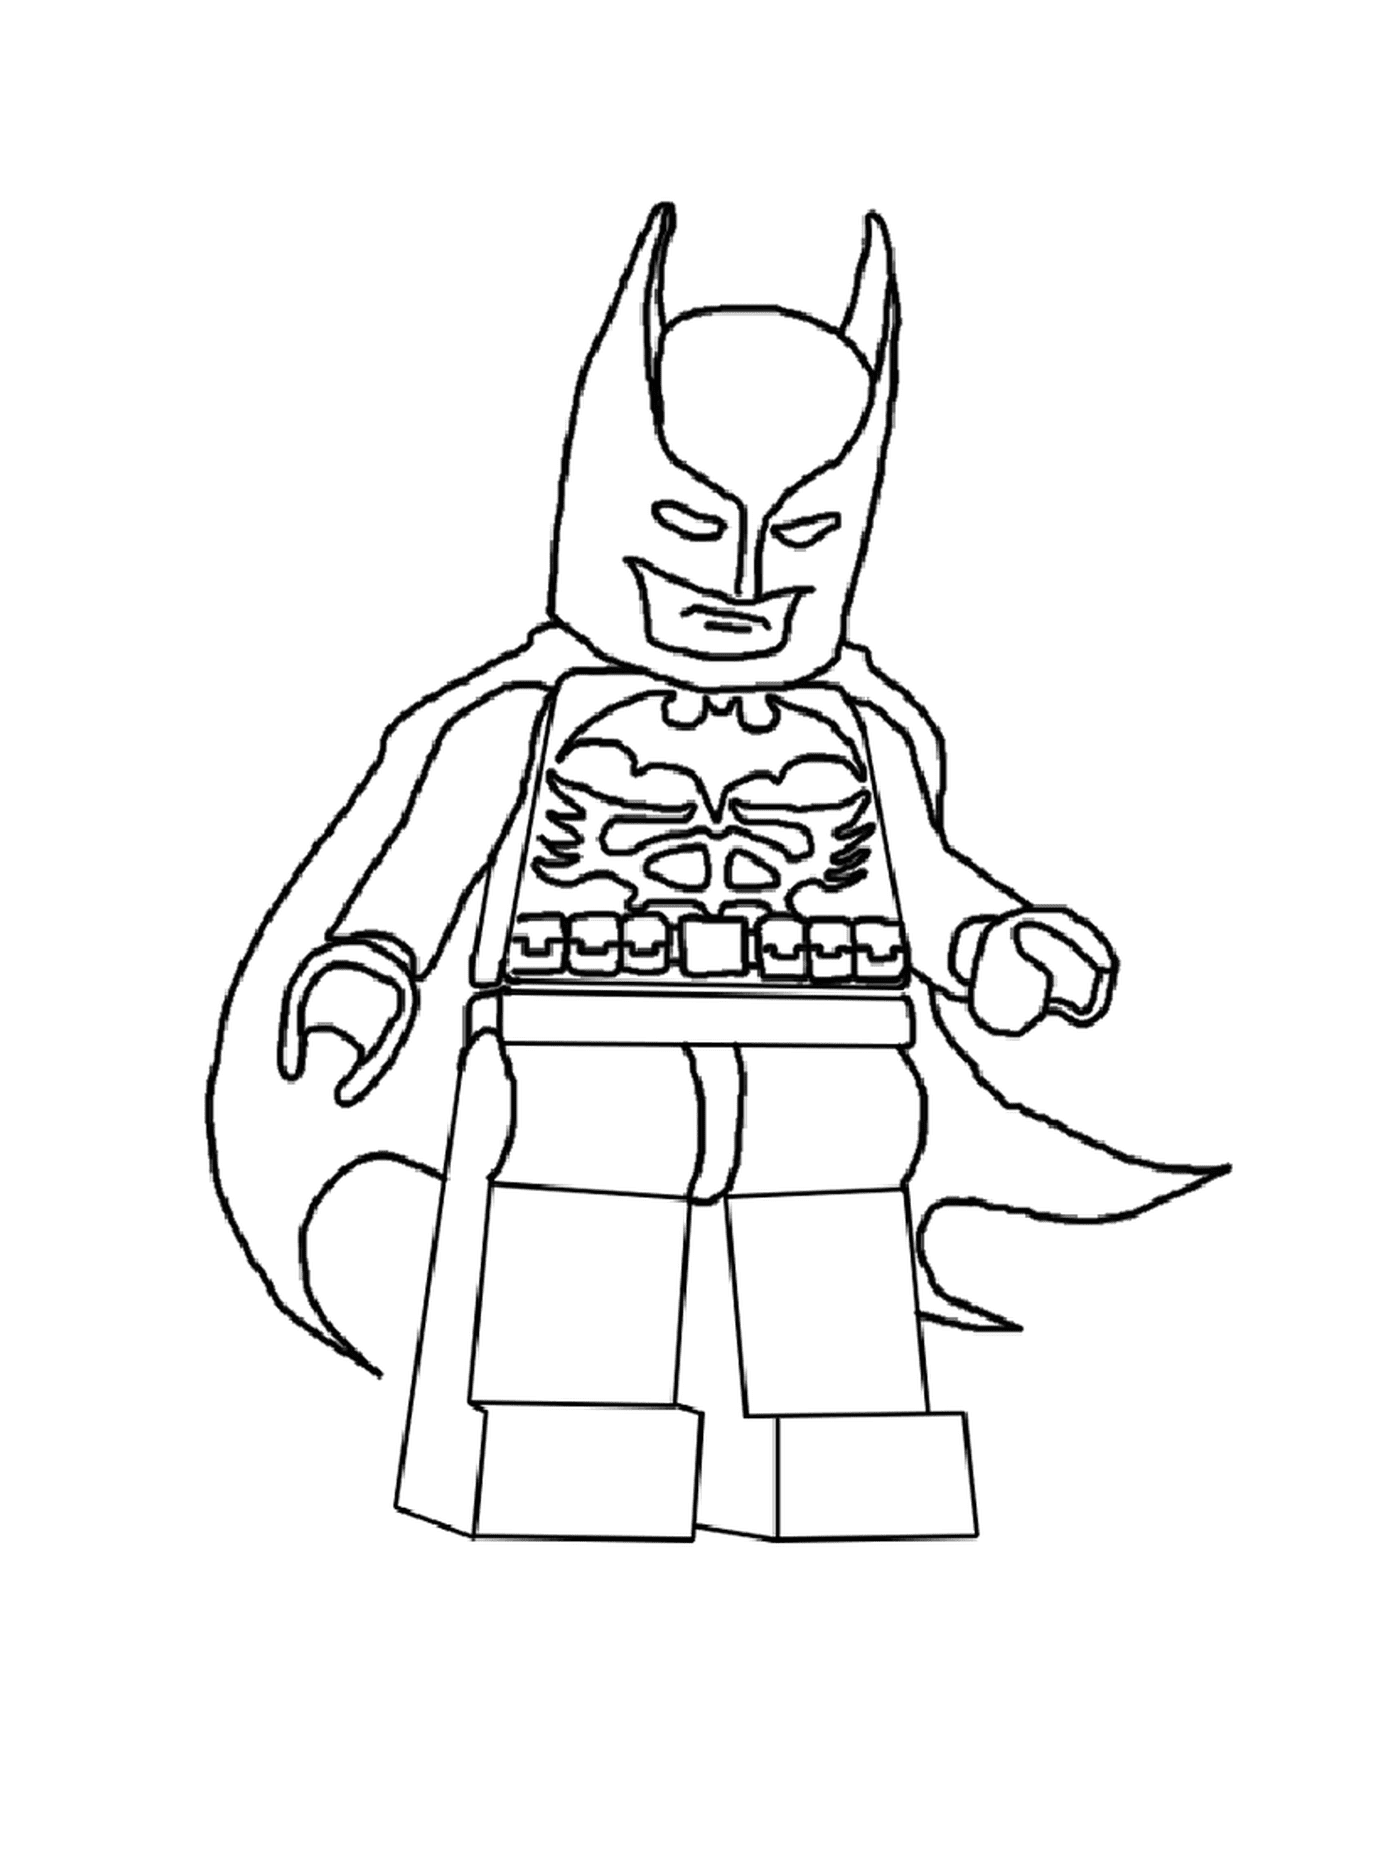  Бэтмен Лего в 2016 году 